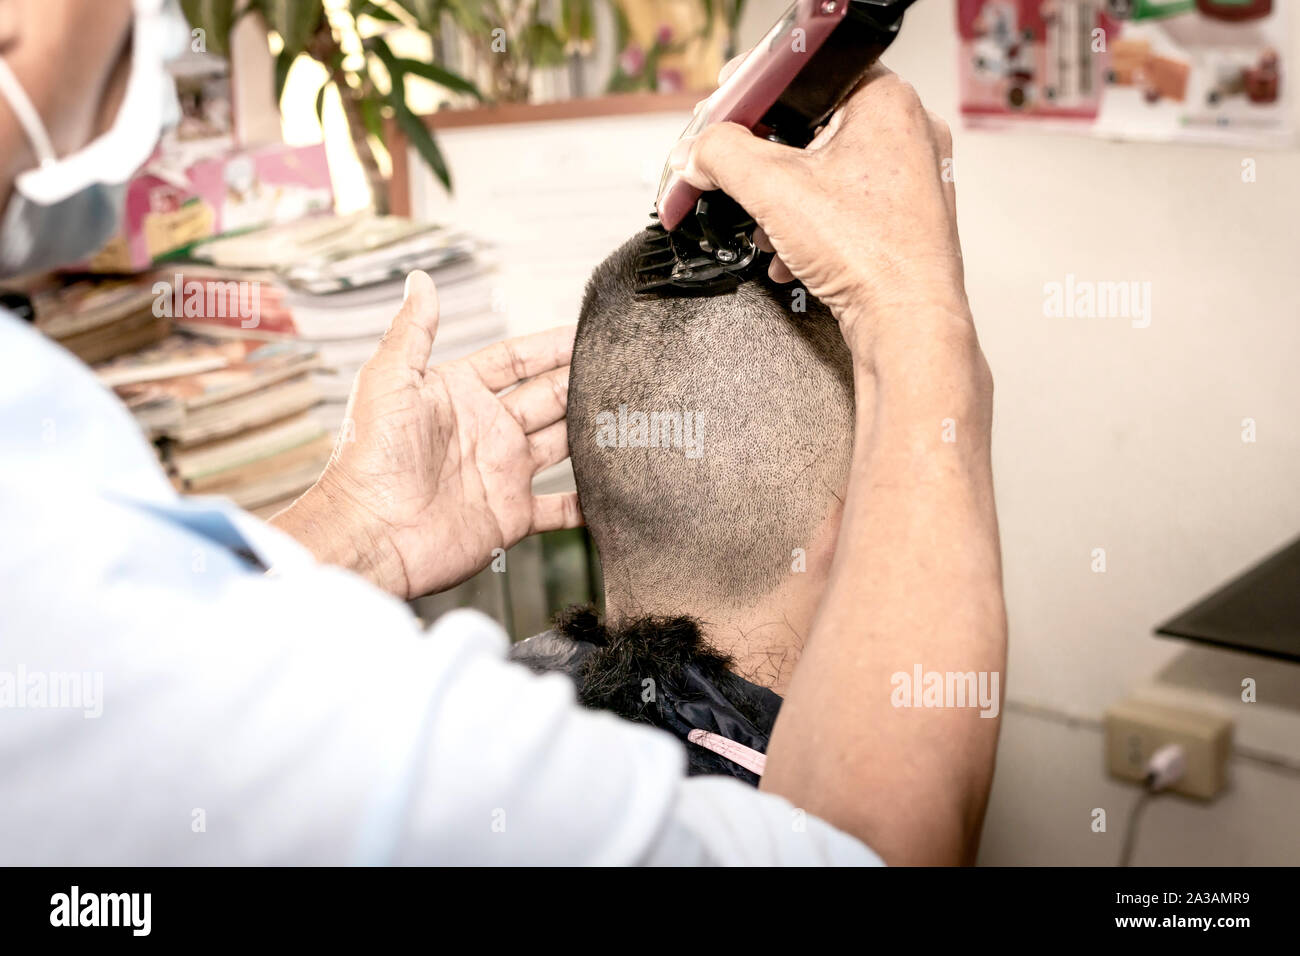 Die Crew Schneiden Frisur. Kurz und einfach Haare für Männer. Friseur, Frisur des Menschen im barbershop. Stockfoto